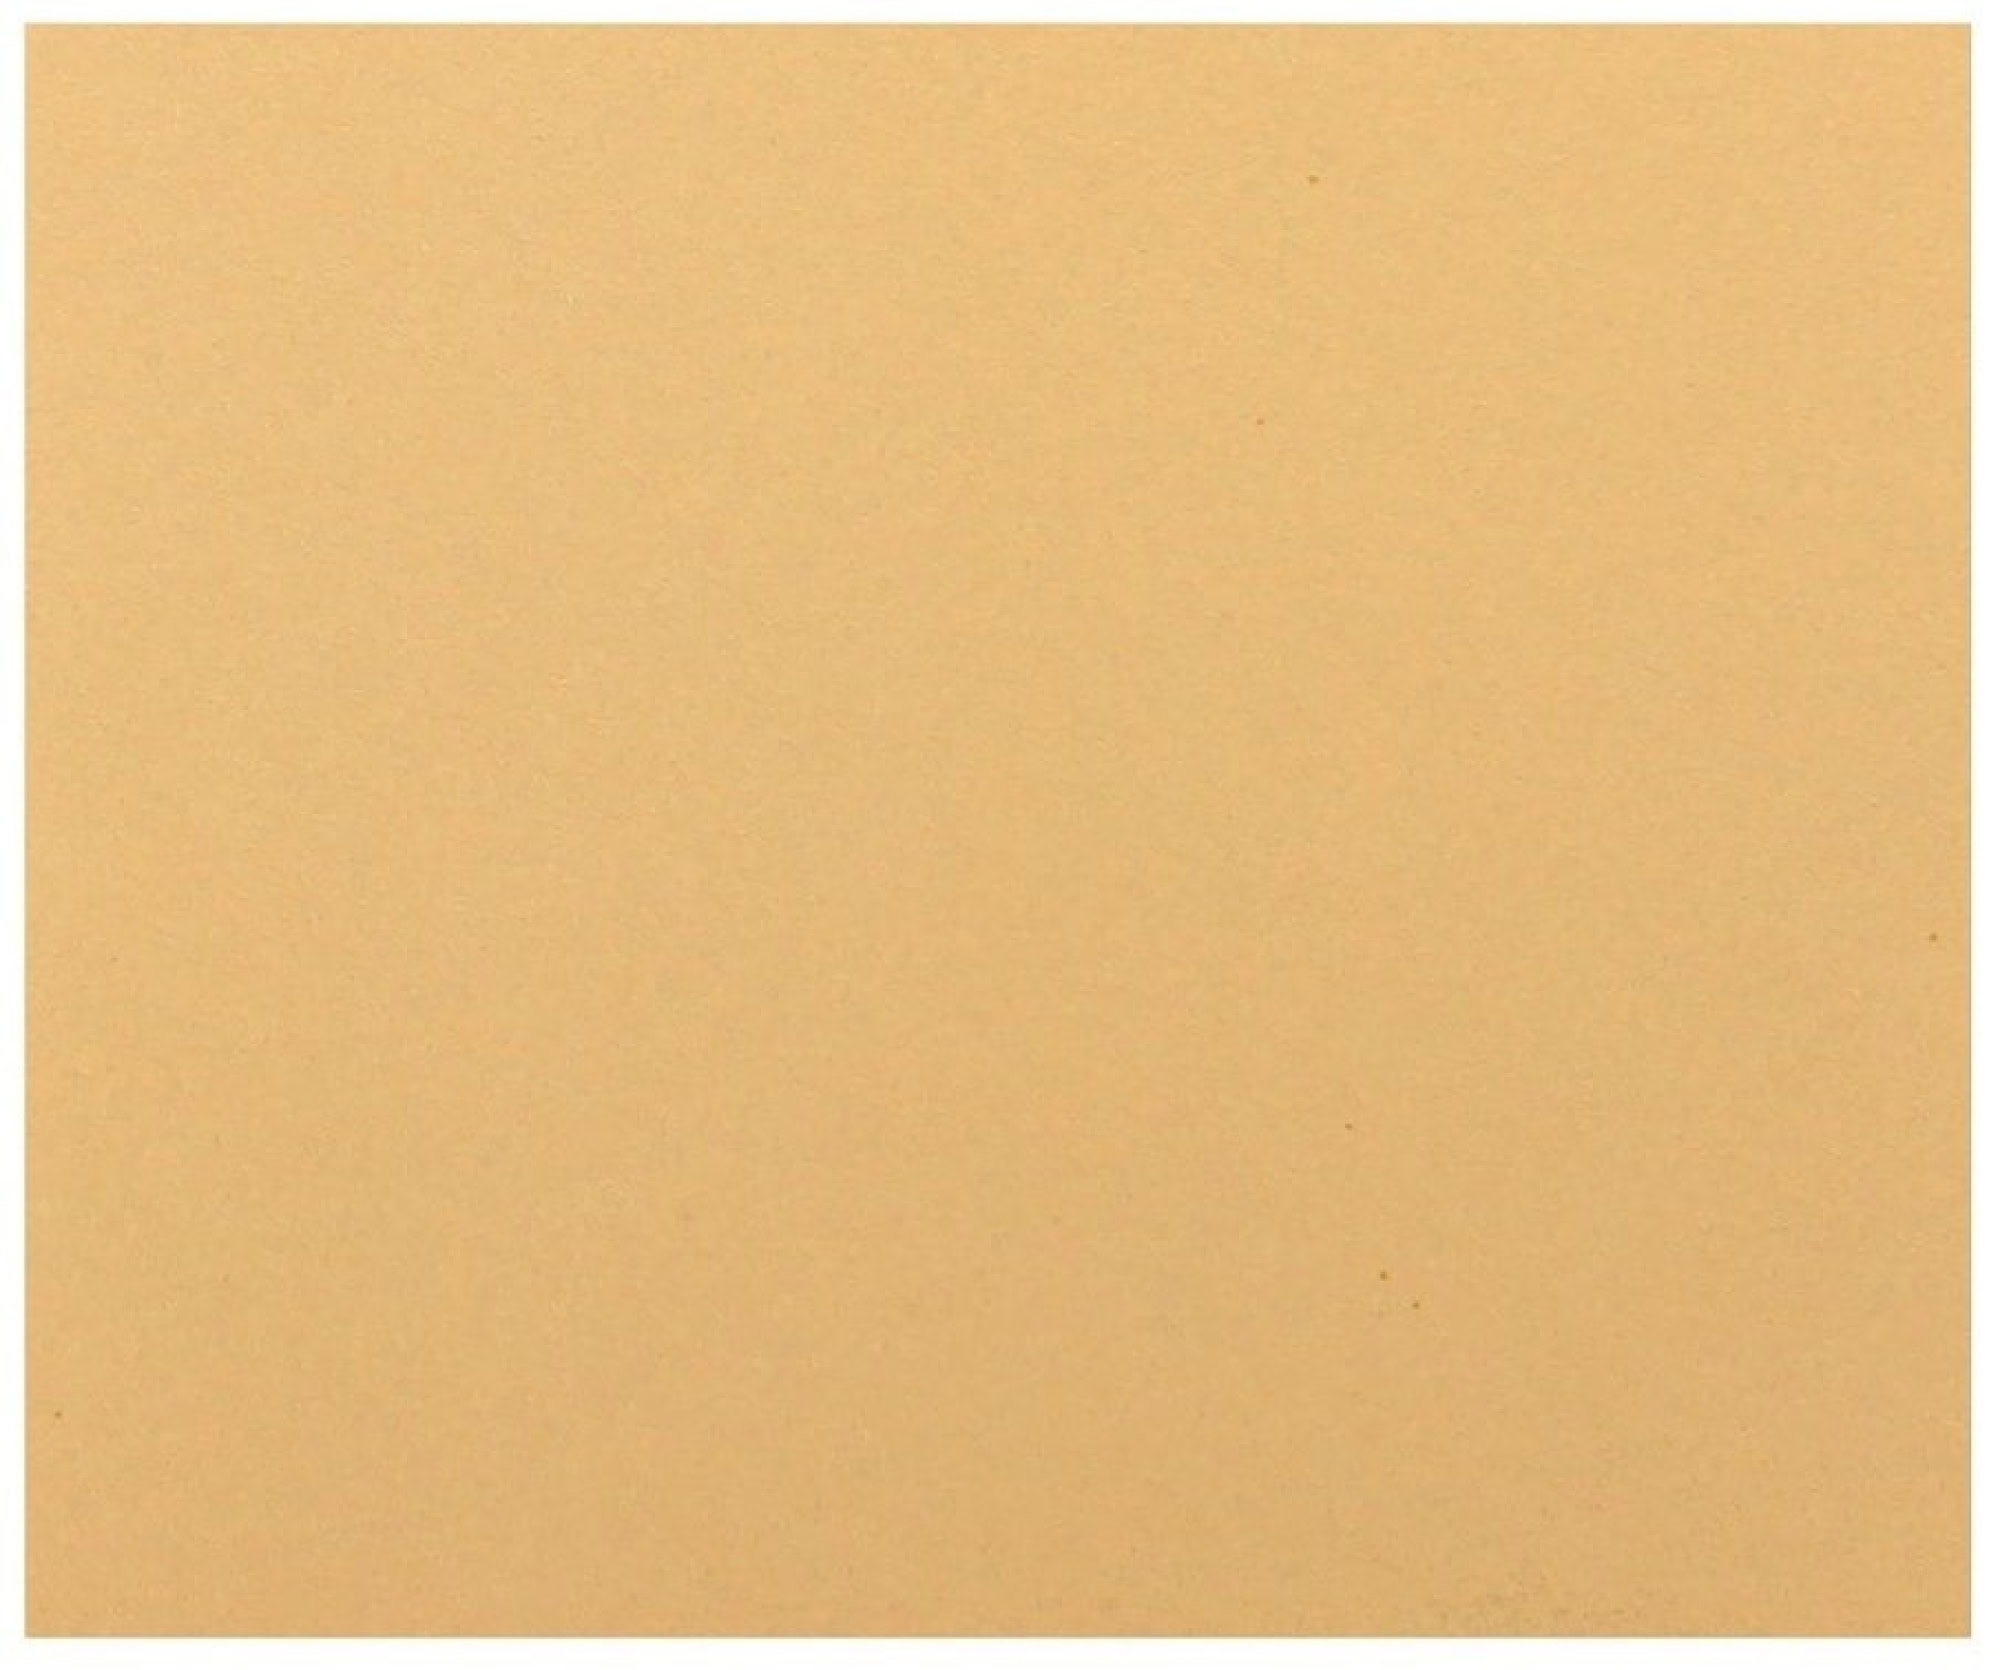 Mirka® Goldflex Soft 2971401025, 115 mm x 140 mm, P240, A, Weich, Ohne Haftung, Einseitige Handpads mit Aluminiumkorn, Für Finish- und Polierarbeiten an Werkstücken